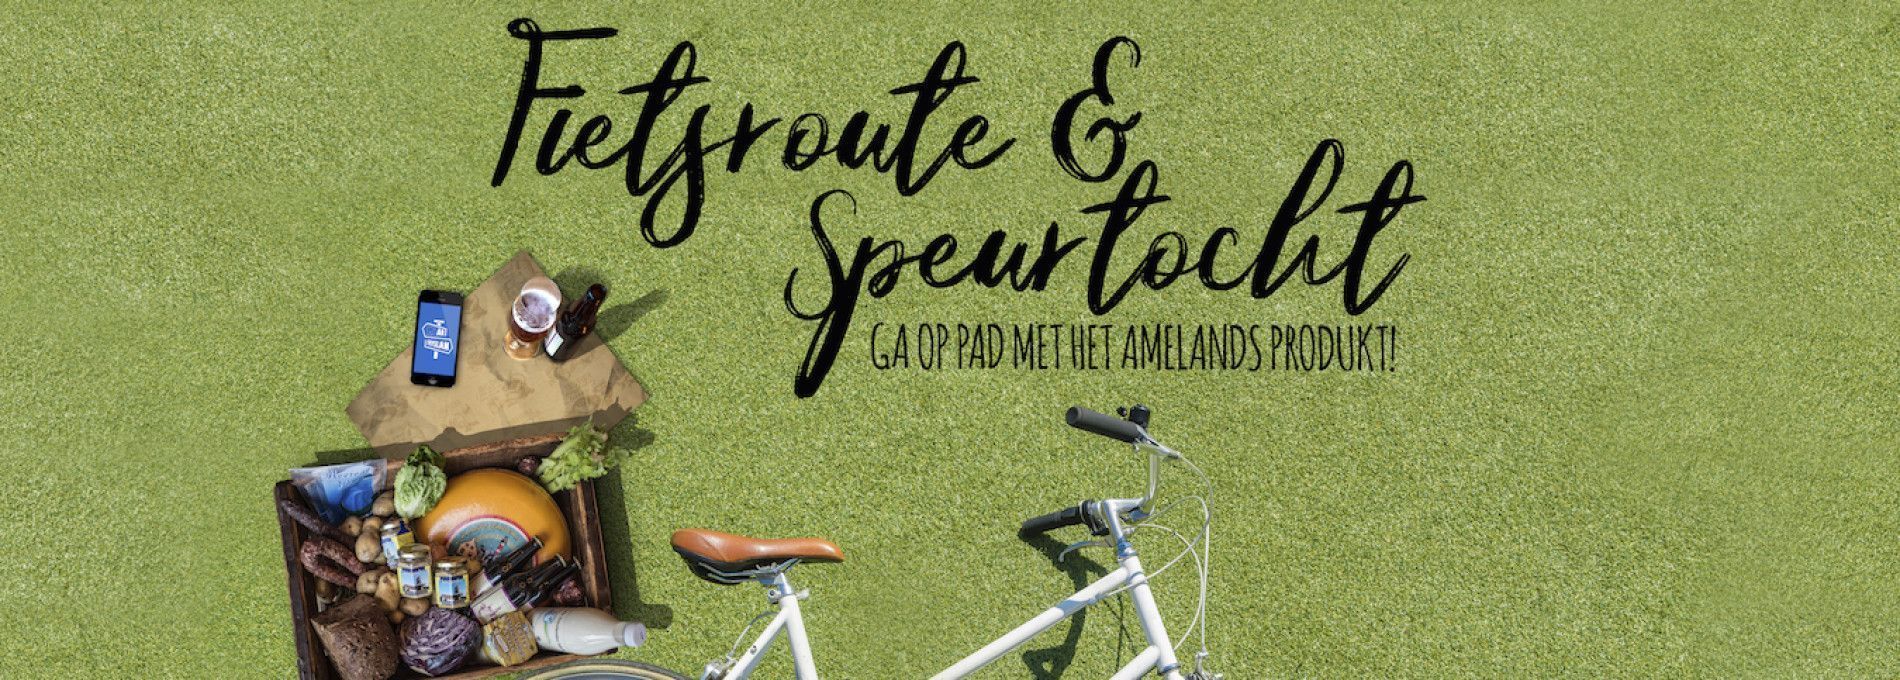 Interactieve fietsroute & speurtocht Amelands Produkt - VVV Ameland